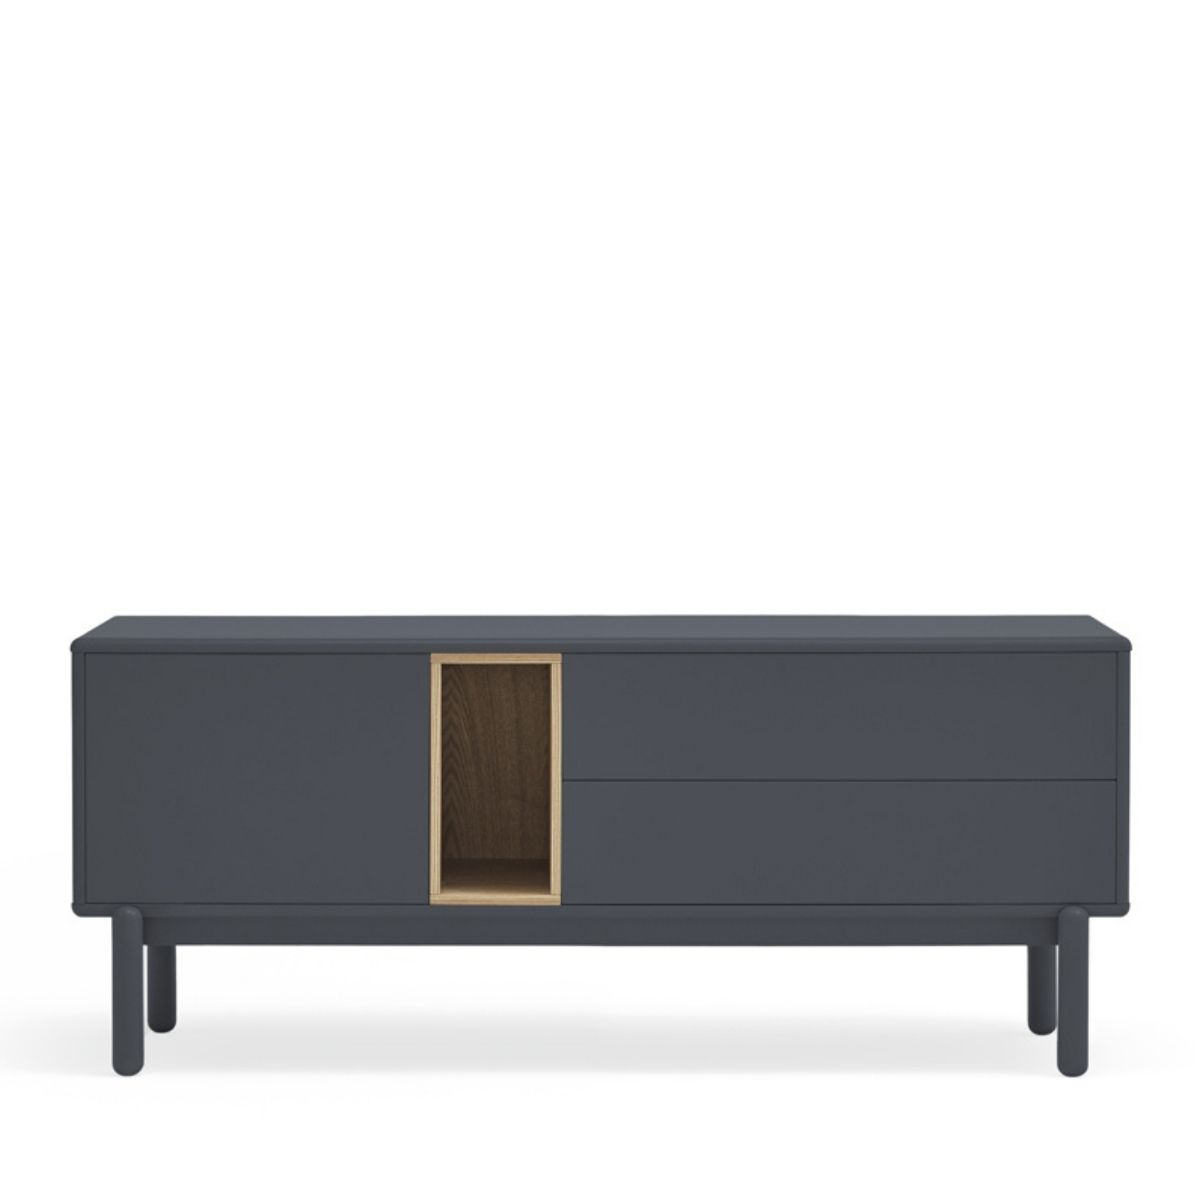 Mueble TV blanco y roble- Artikalia - Muebles de diseño